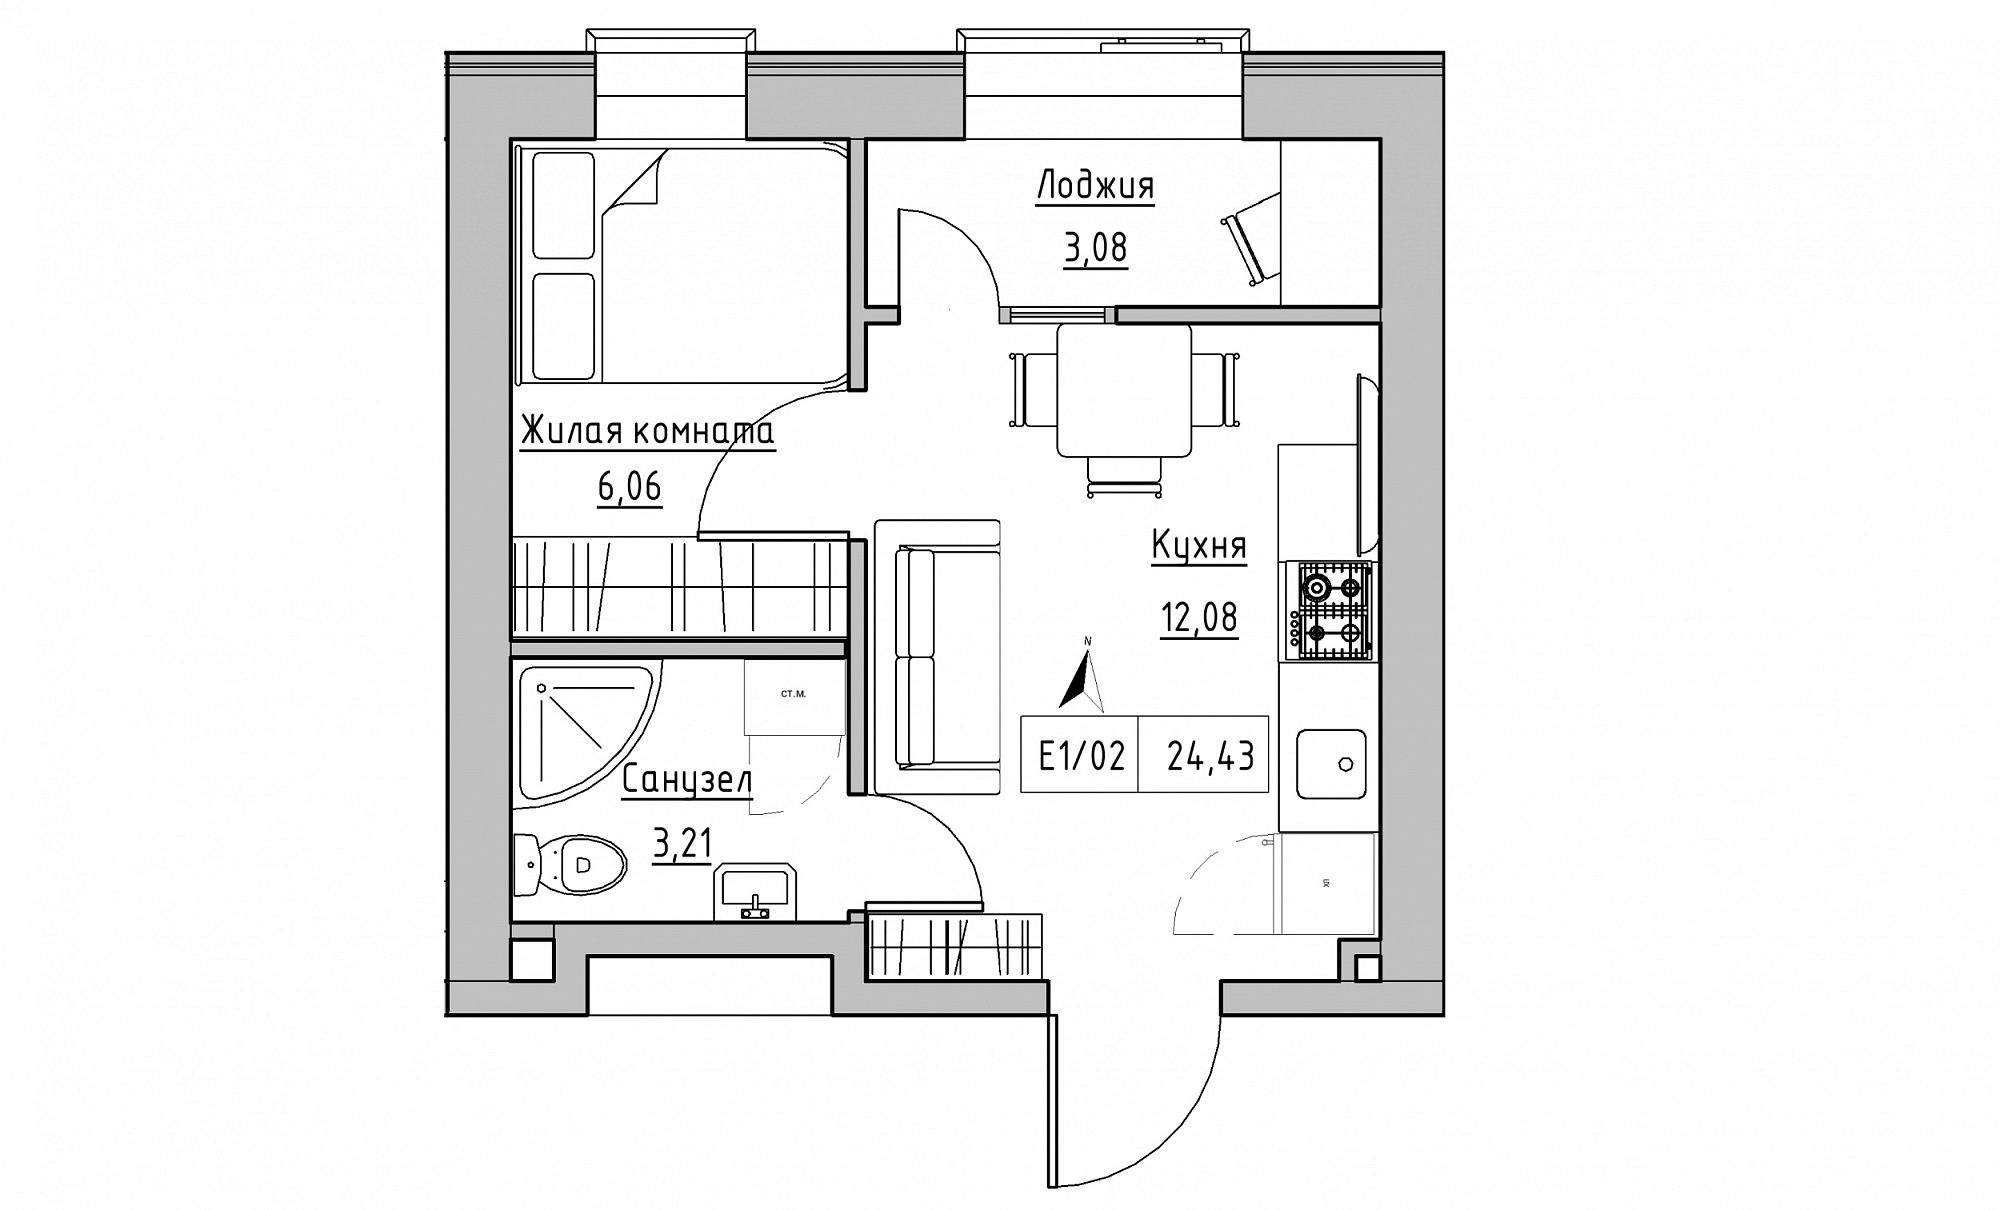 Планування 1-к квартира площею 24.43м2, KS-015-04/0014.